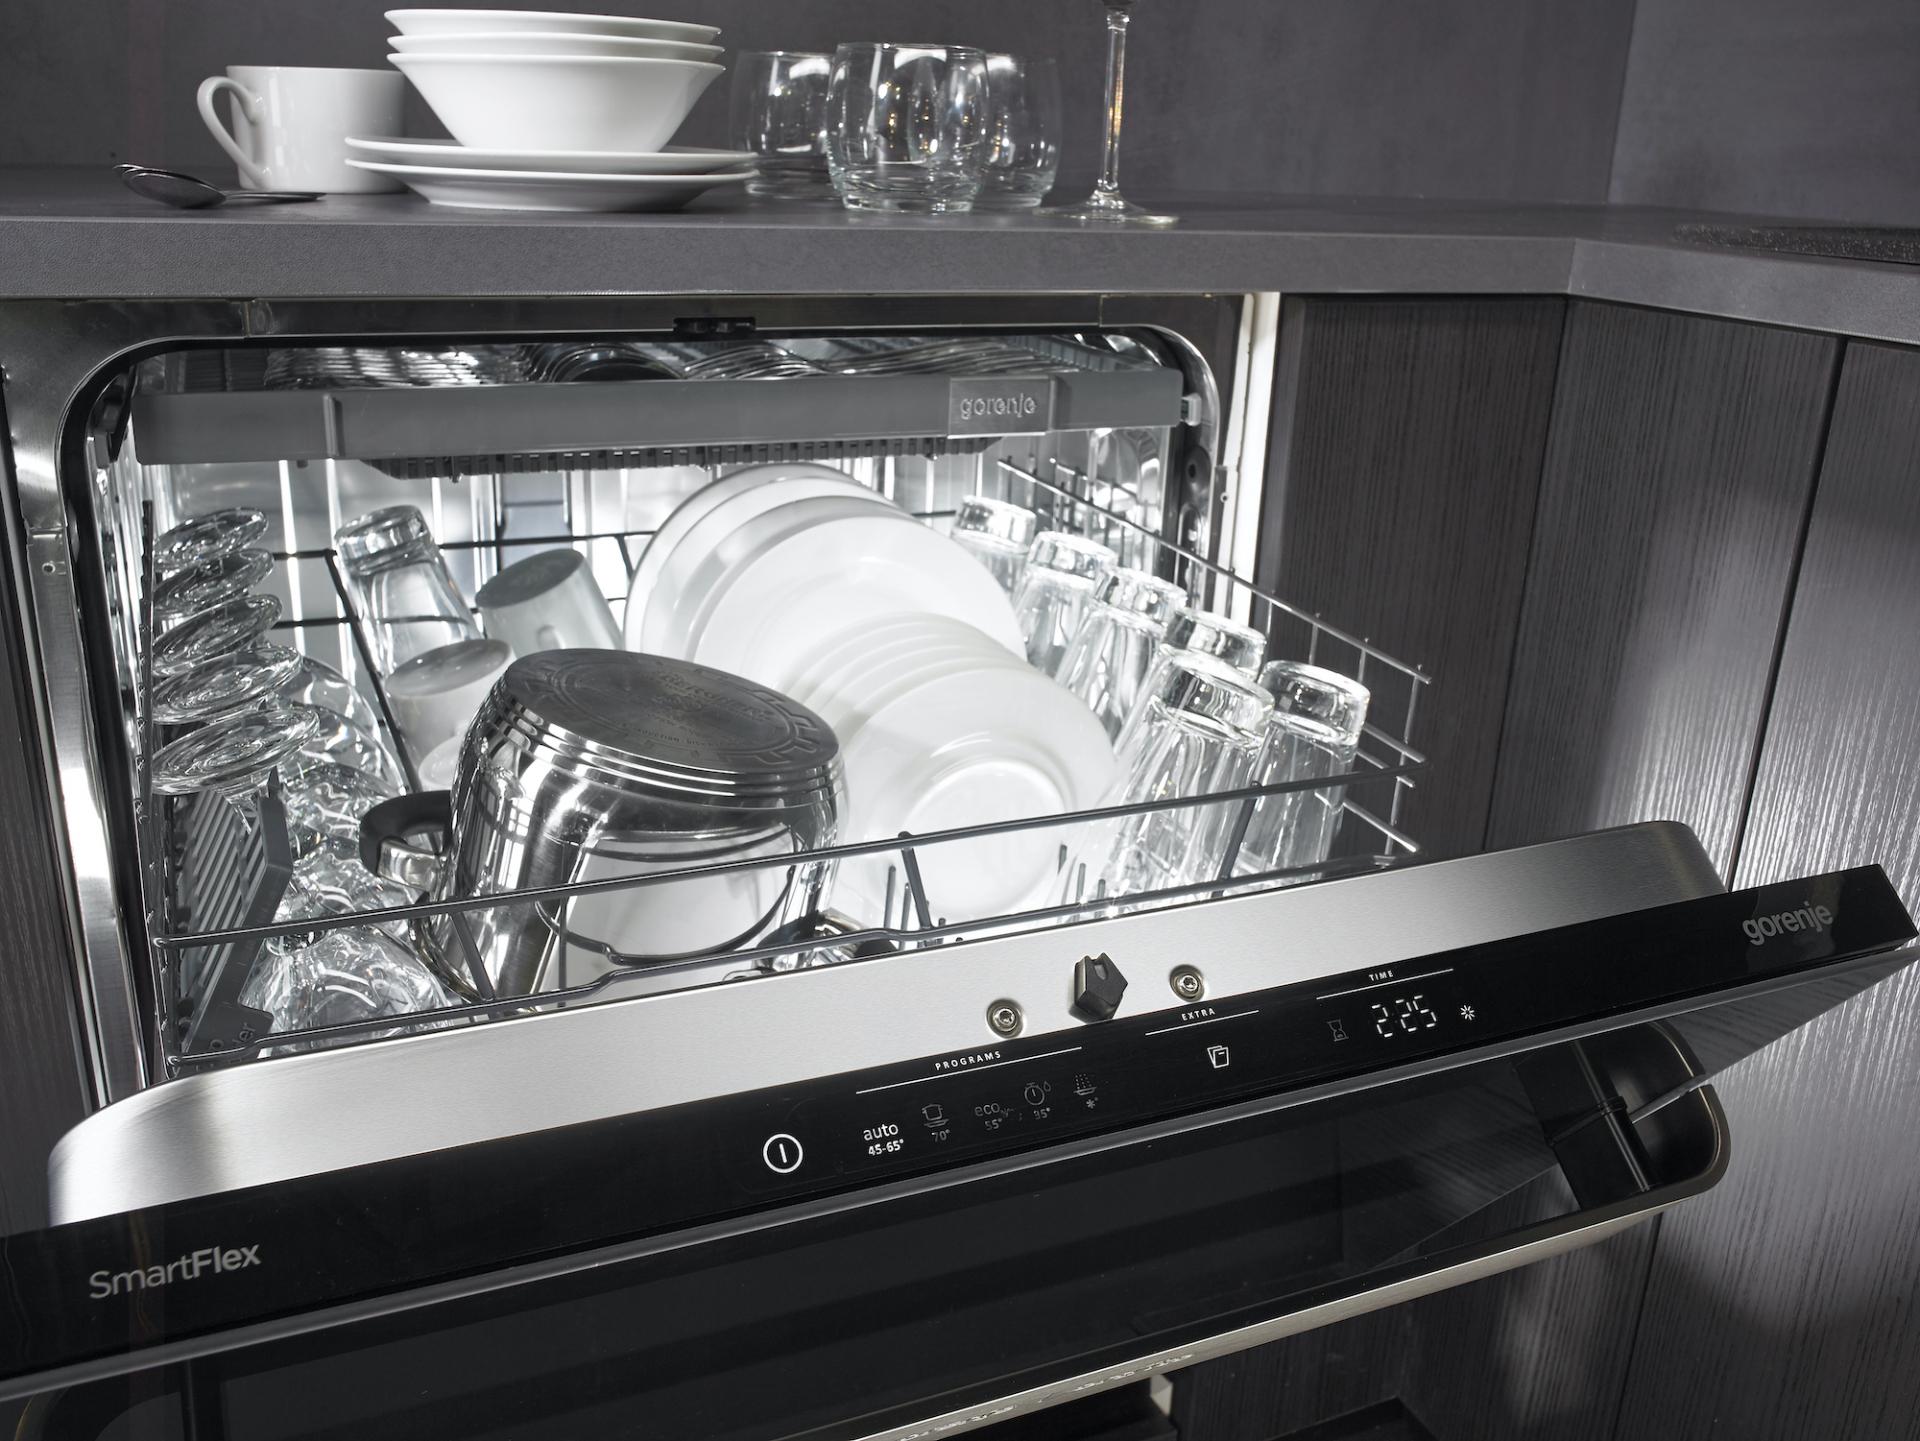 Встроенная посудомоечная машина 60 см горенье. Посудомоечная машина Gorenje gv62040. Встраиваемая посудомоечная машина Gorenje gv671c60. Посудомойка Gorenje встраиваемая. Горение Ора Ито посудомойка.